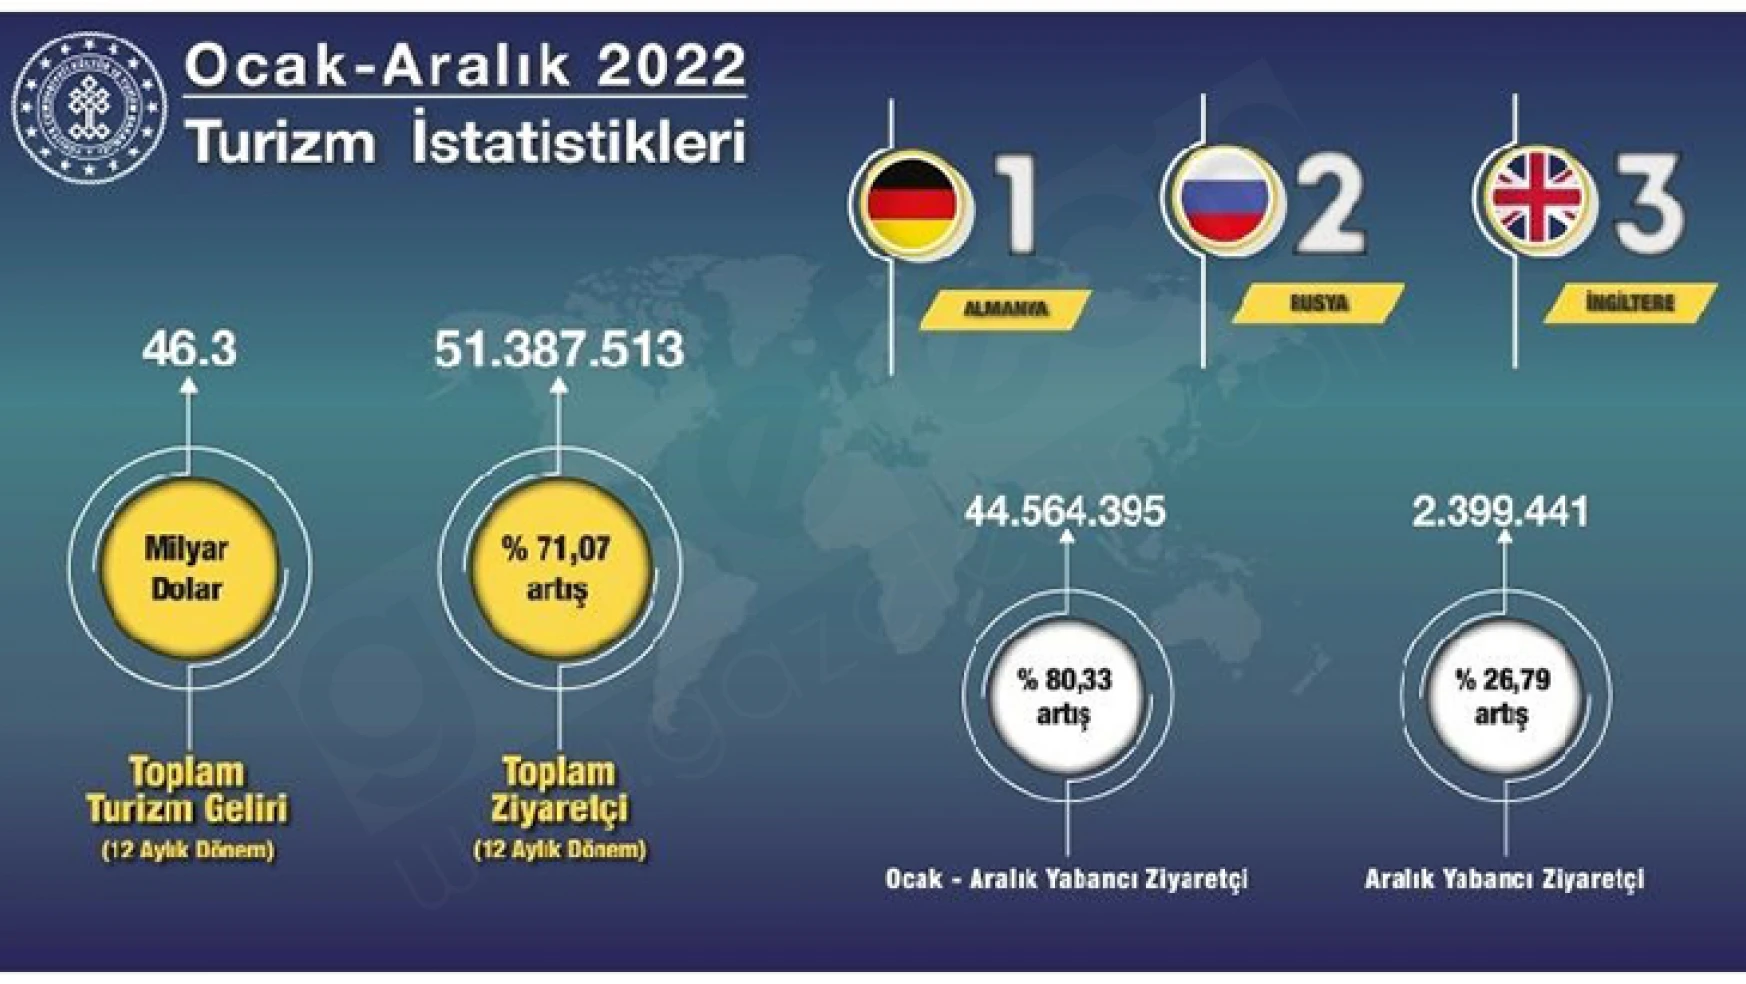 Türkiye 51.4 milyon turist ve 46.3 milyar dolar turizm gelirine ulaştı